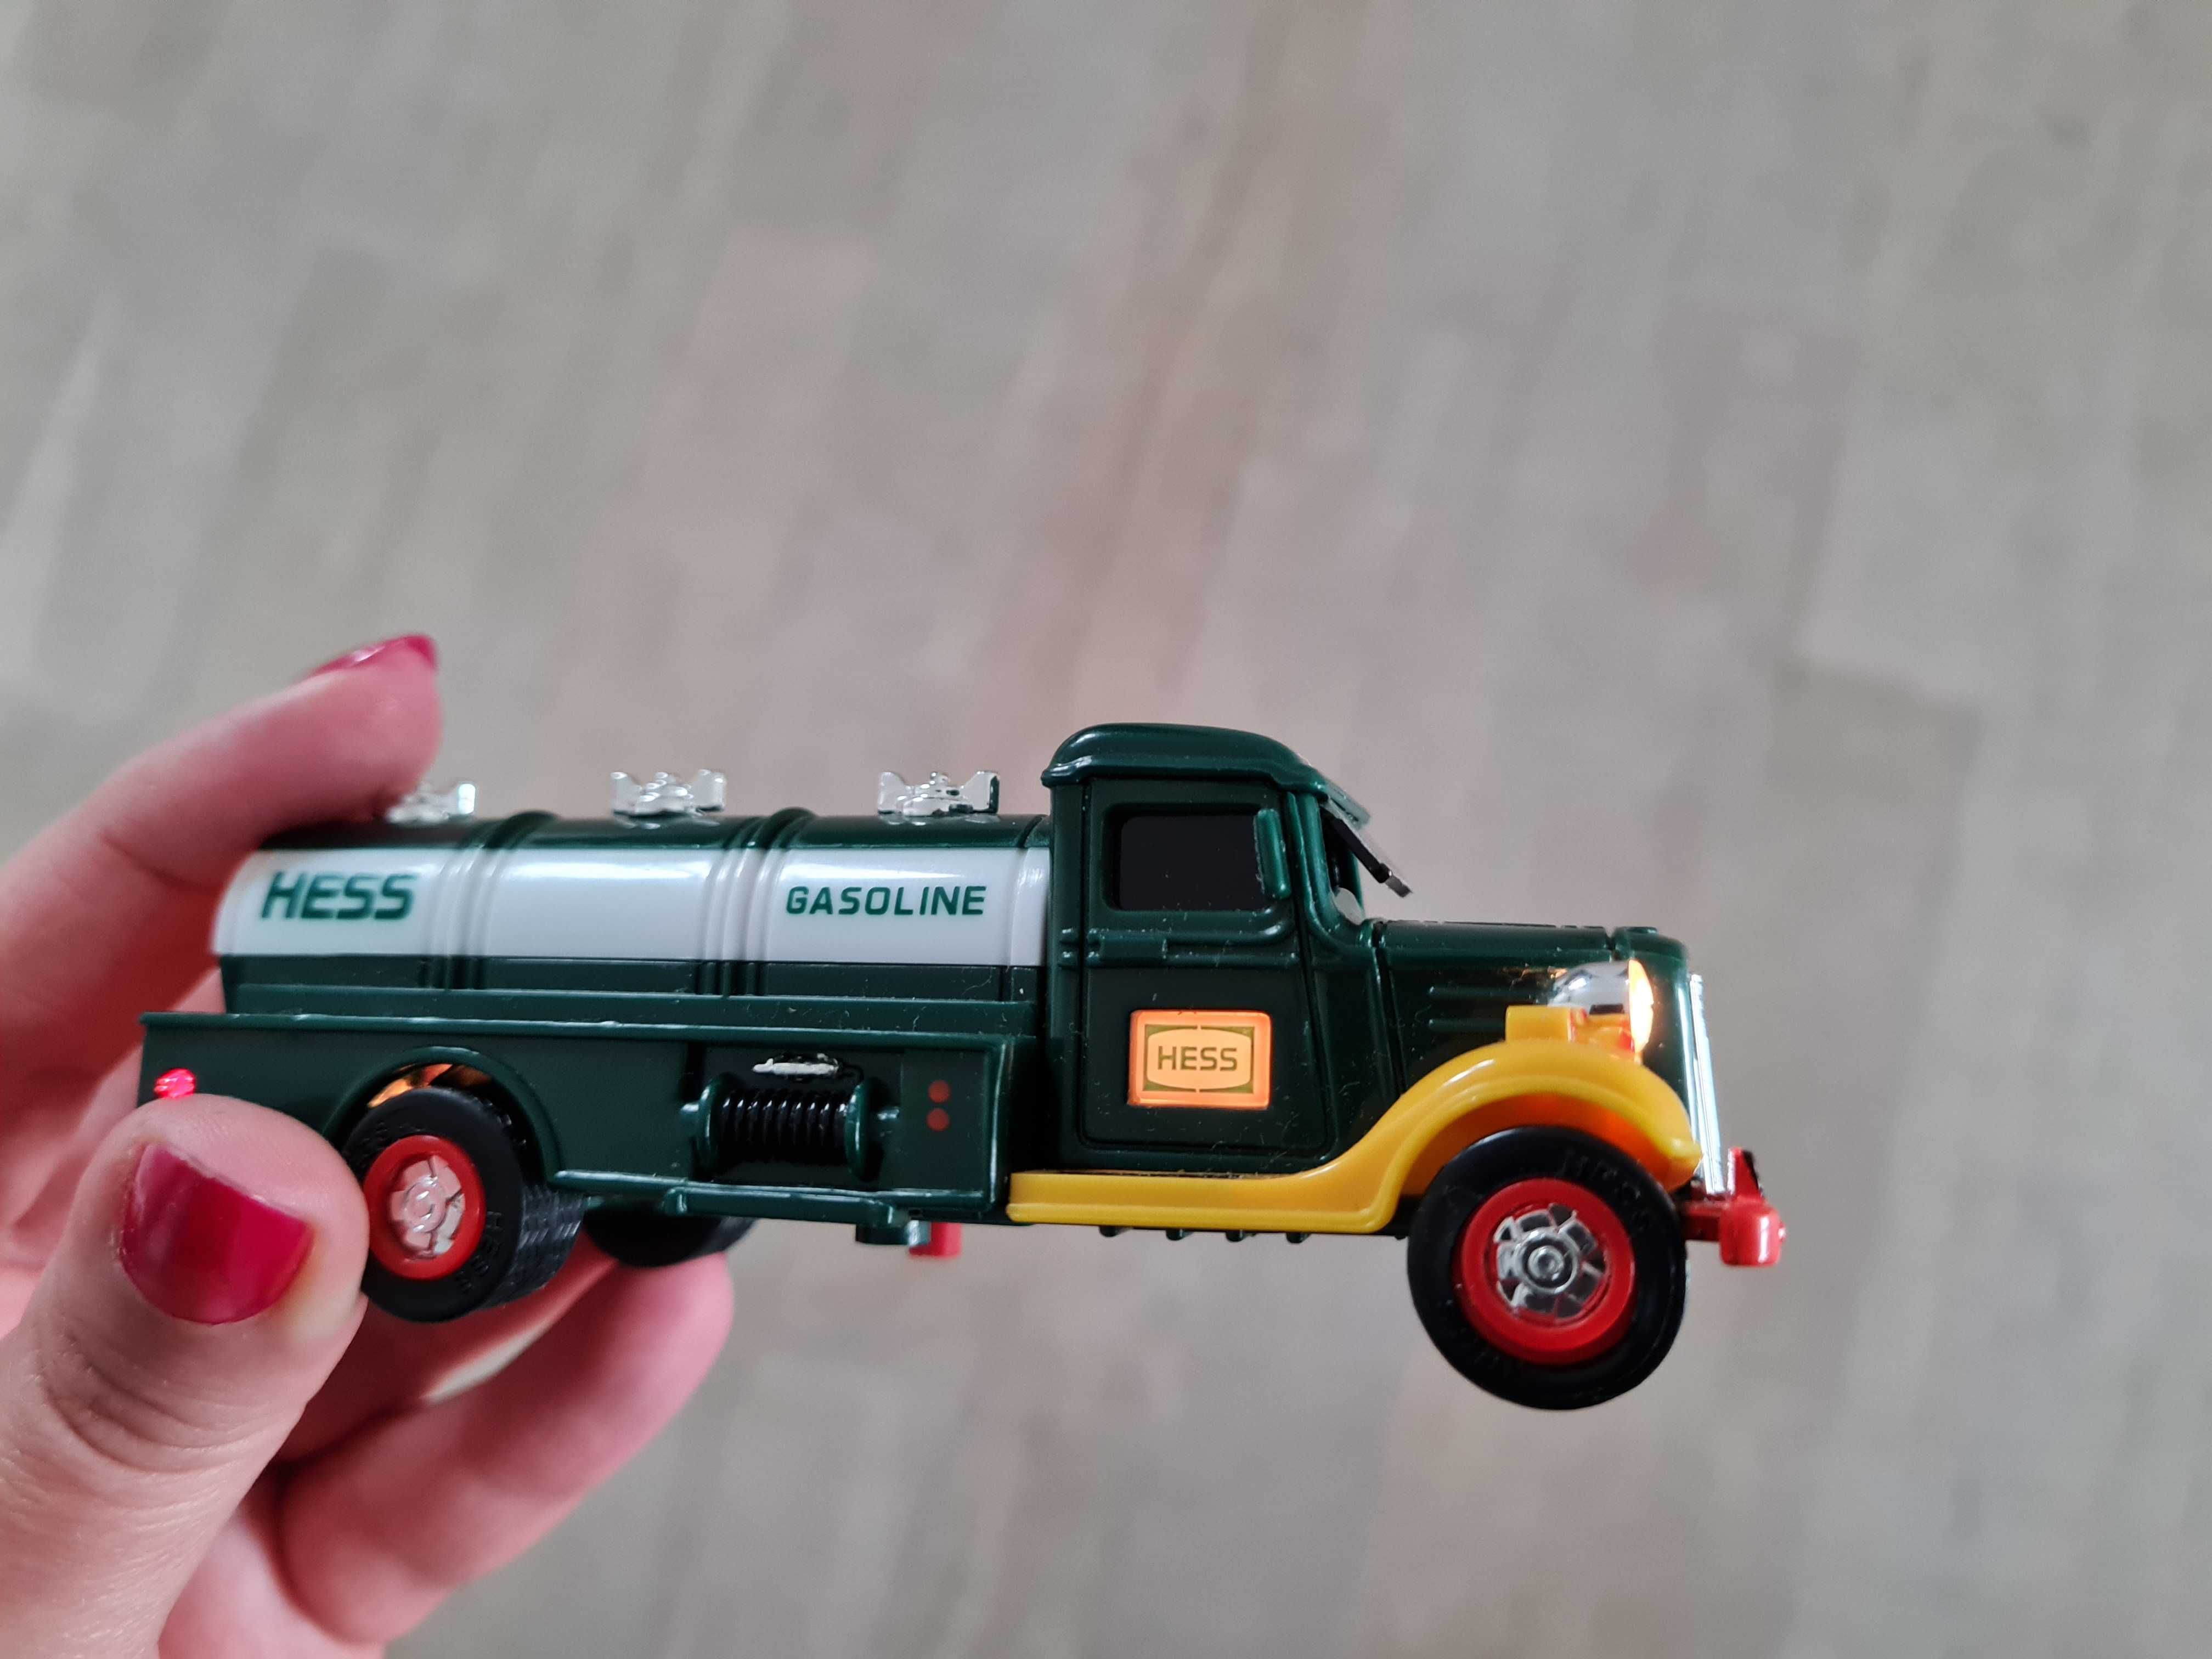 ciężarówka zabawka kolekcja resorak HESS gasoline cysterna samochodzik